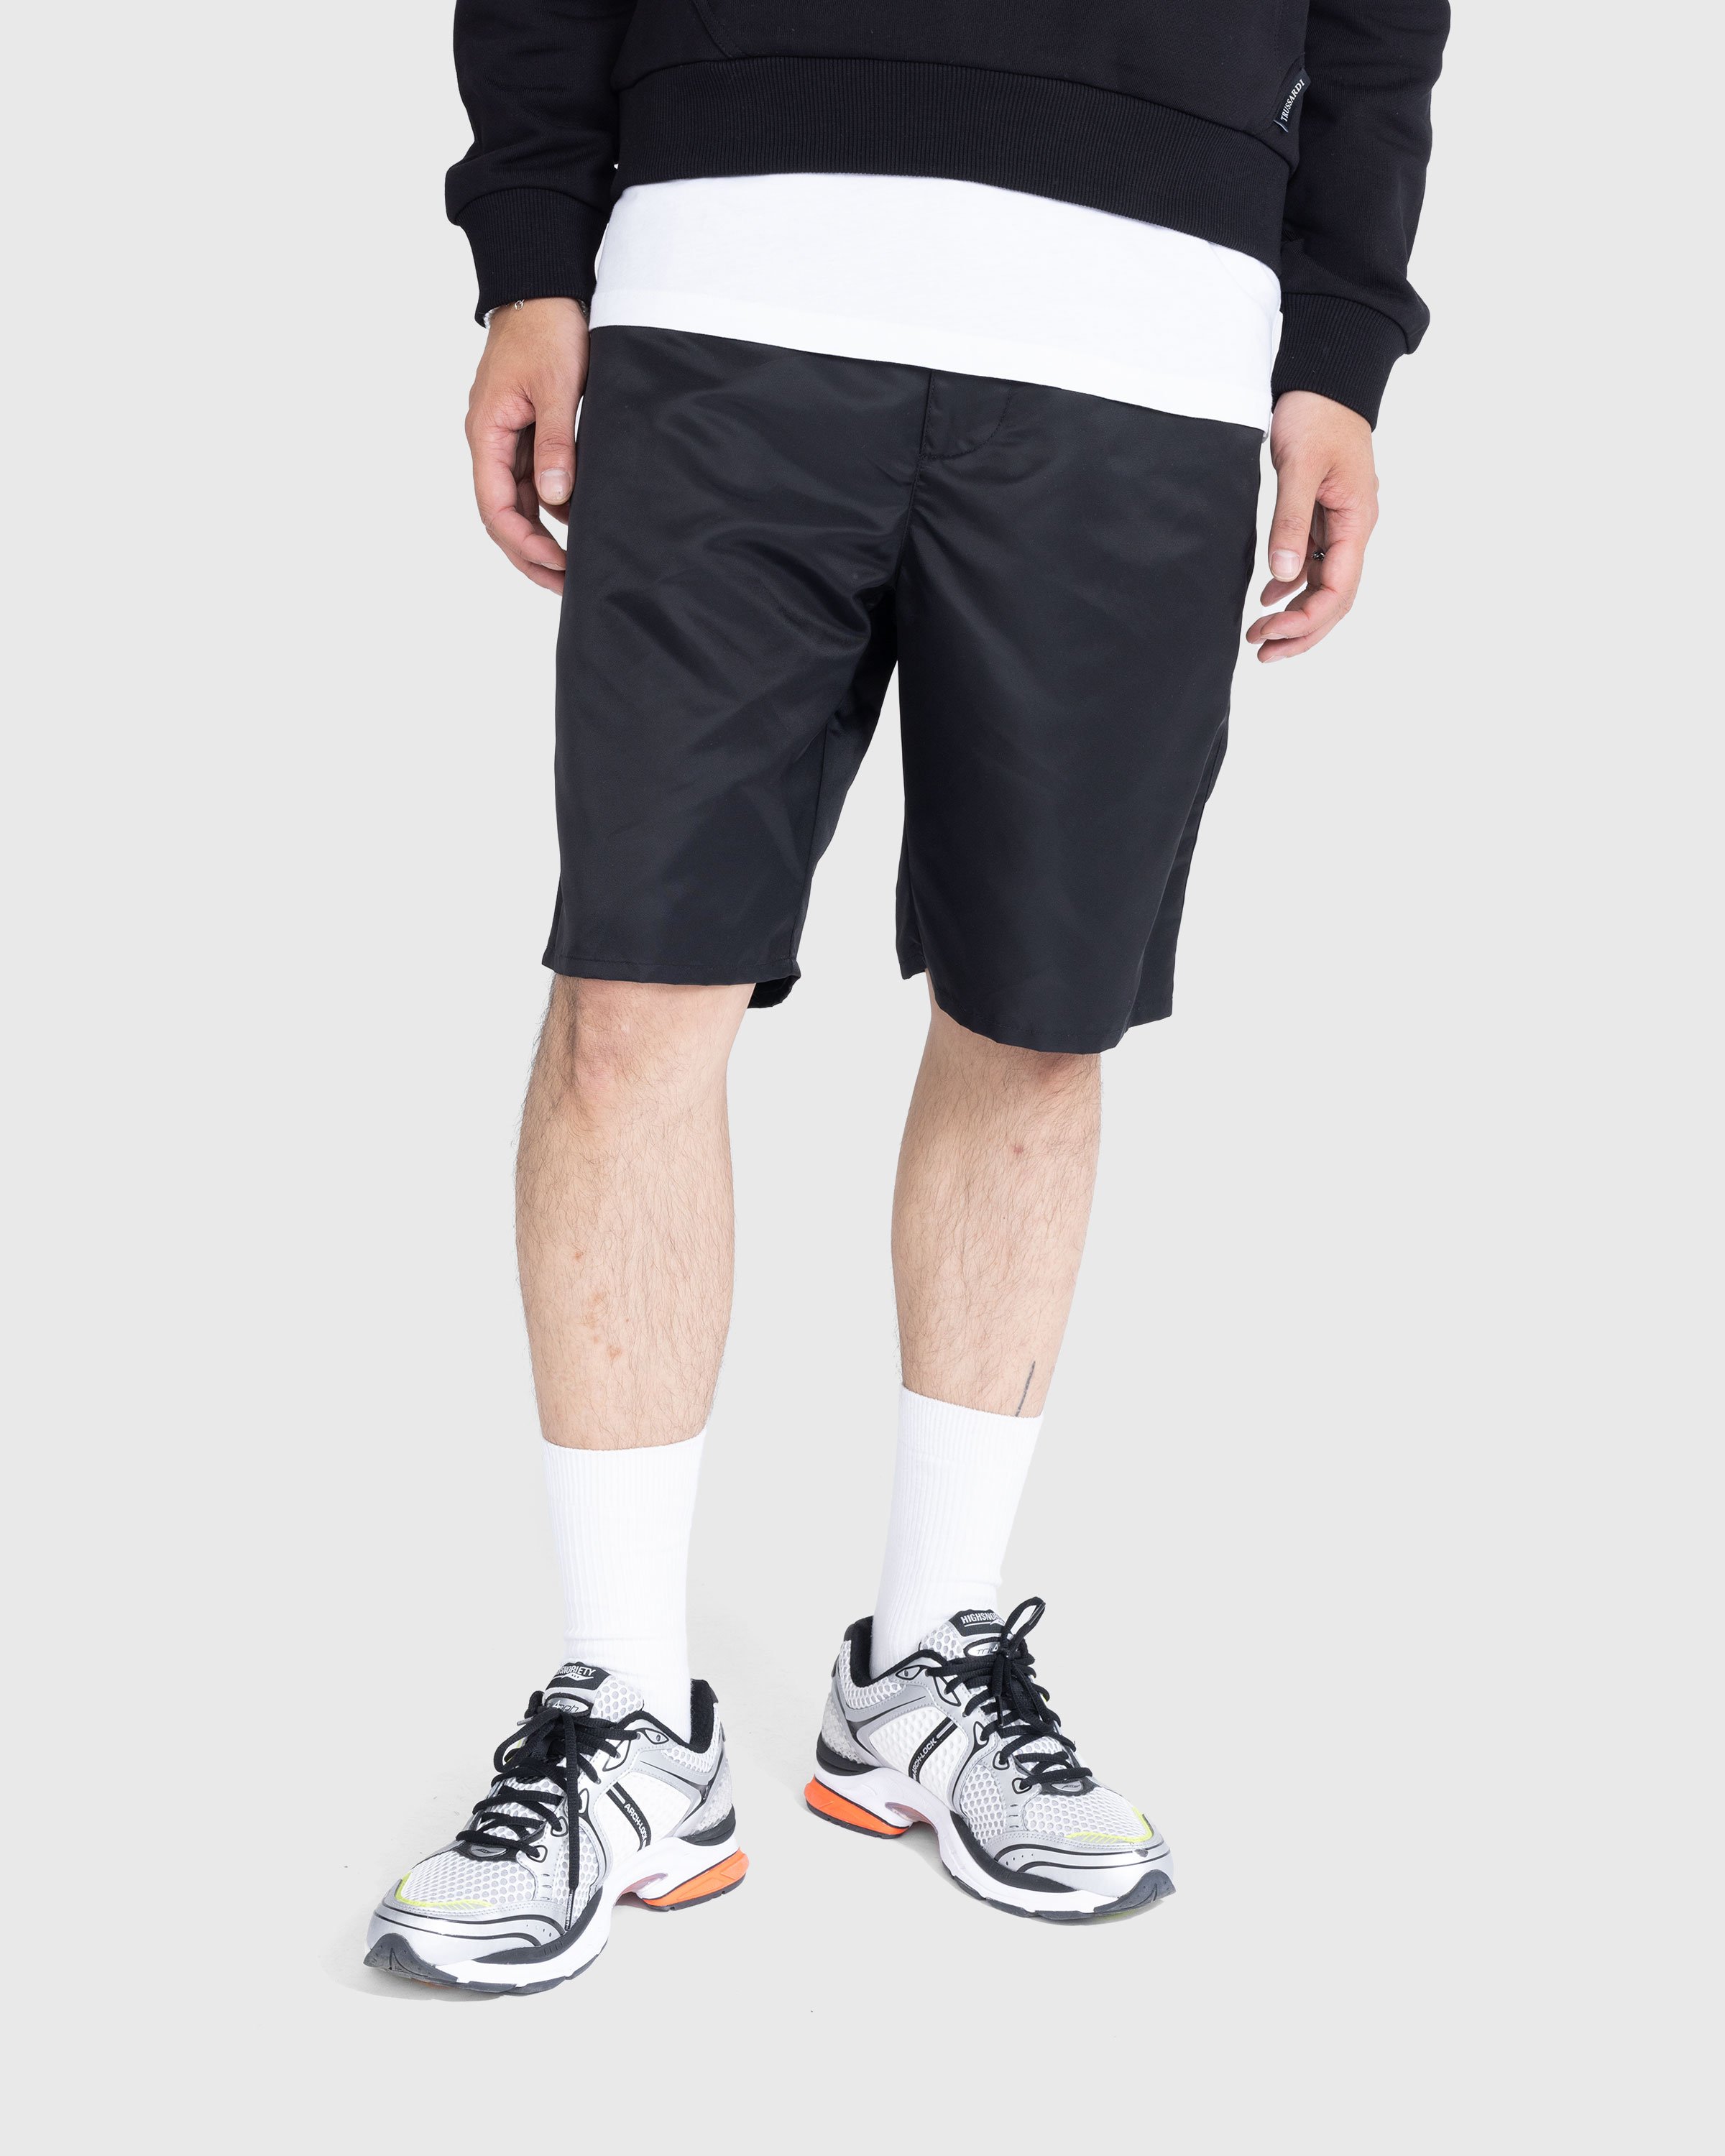 Trussardi - Nylon Shorts Black - Clothing - Black - Image 2